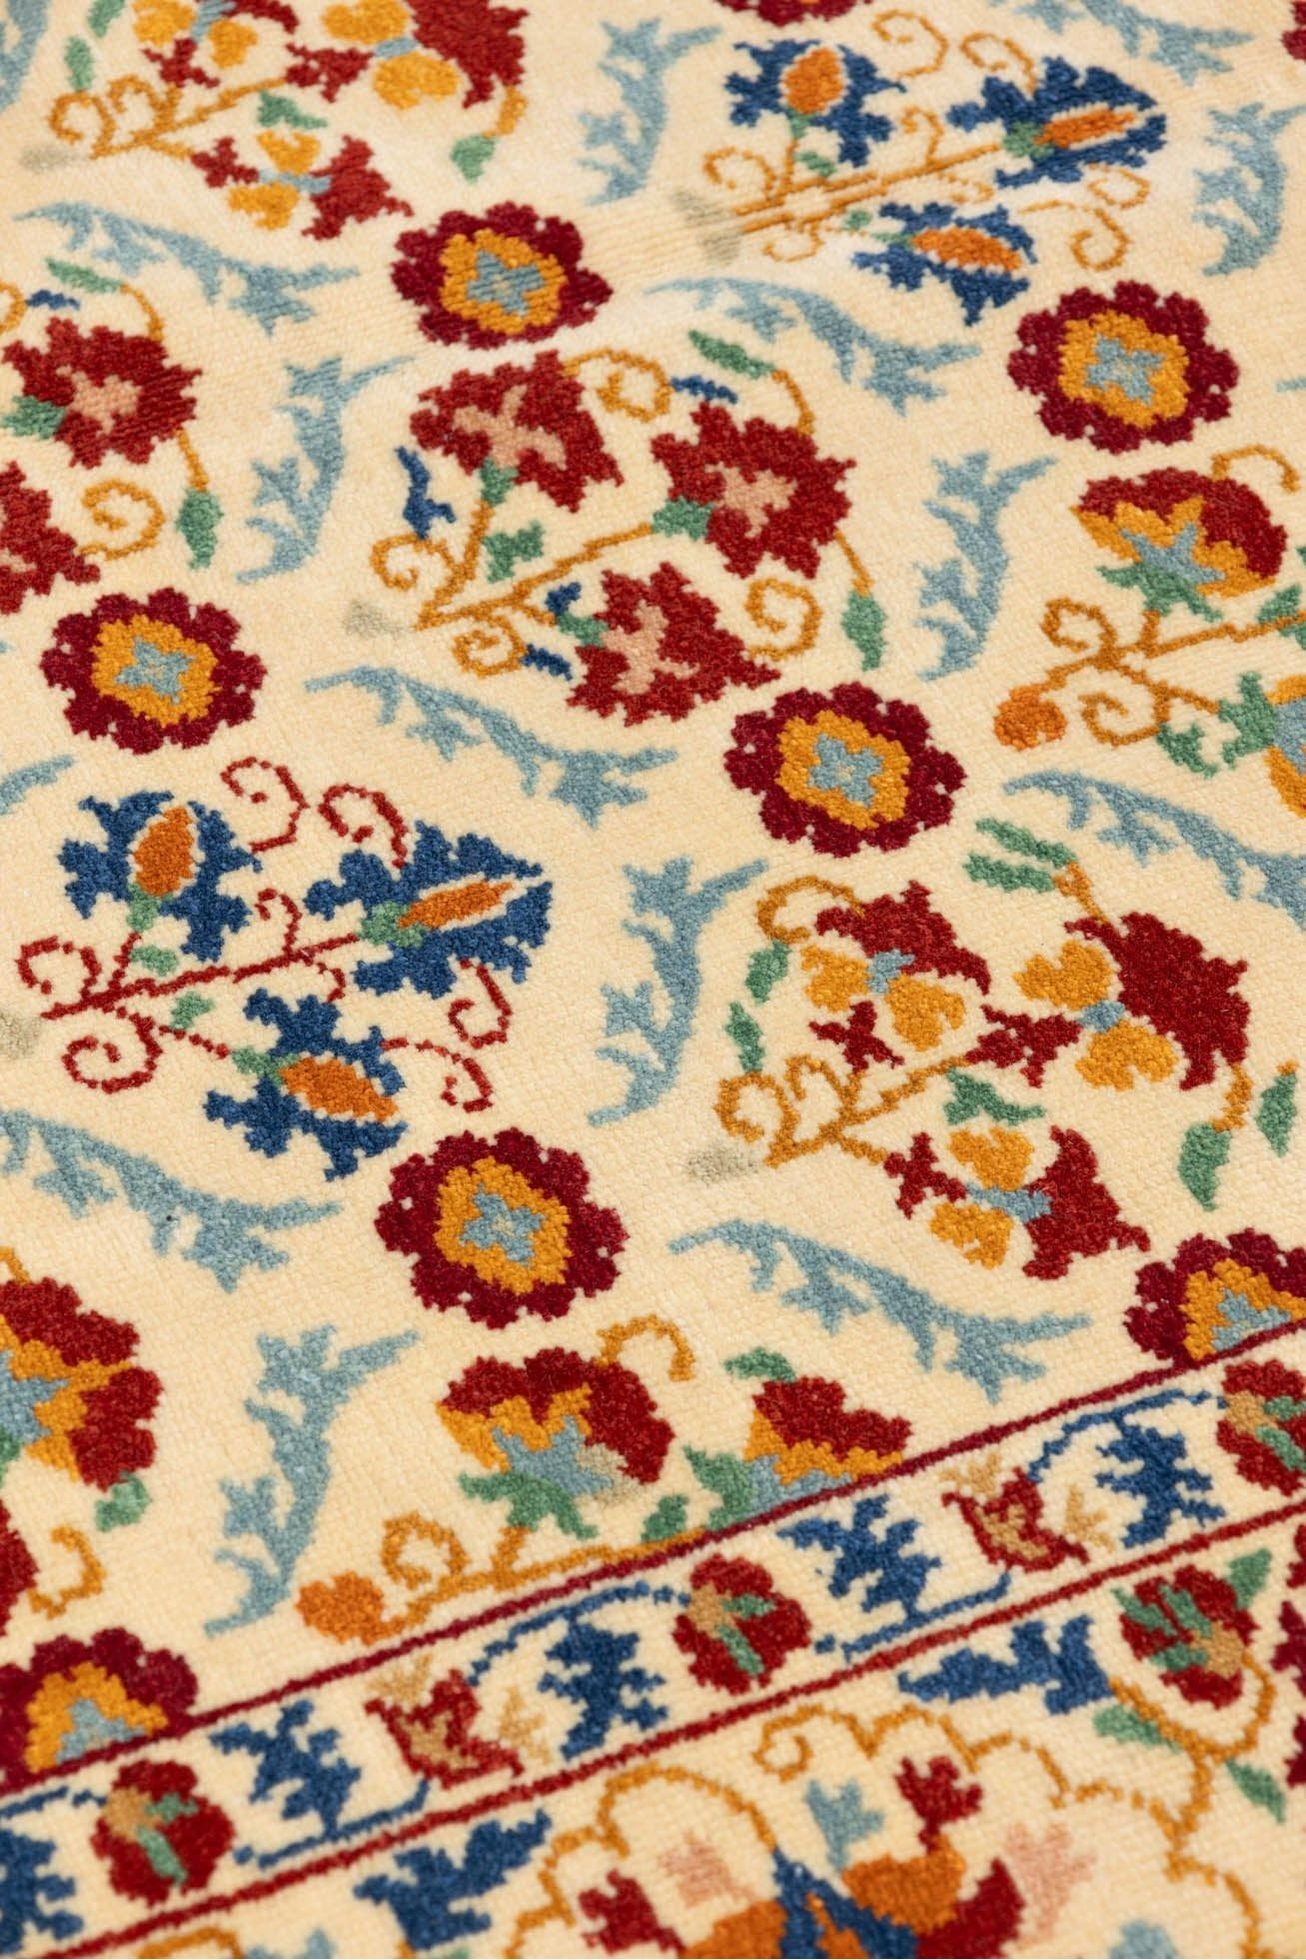 #Turkish_Carpets_Rugs# #Modern_Carpets# #Abrash_Carpets#Bahrain922-173X232